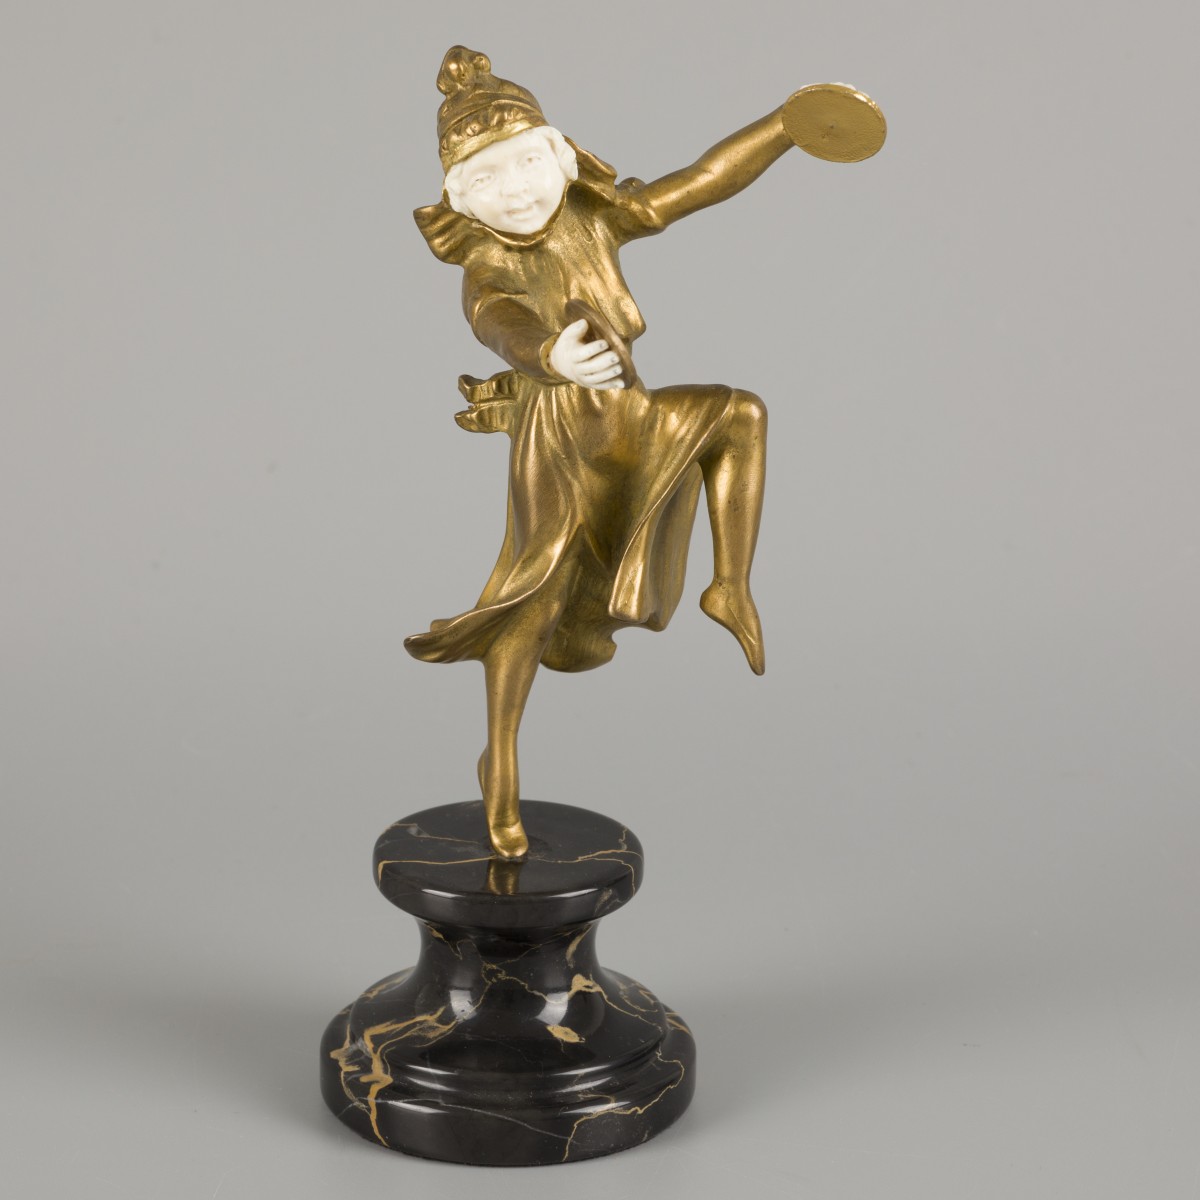 Affortunato Gory (XIX-XX), een bronzen sculptuur voorstellende een ballerina die de bekkens bespeelt, Frankrijk, ca. 1900.